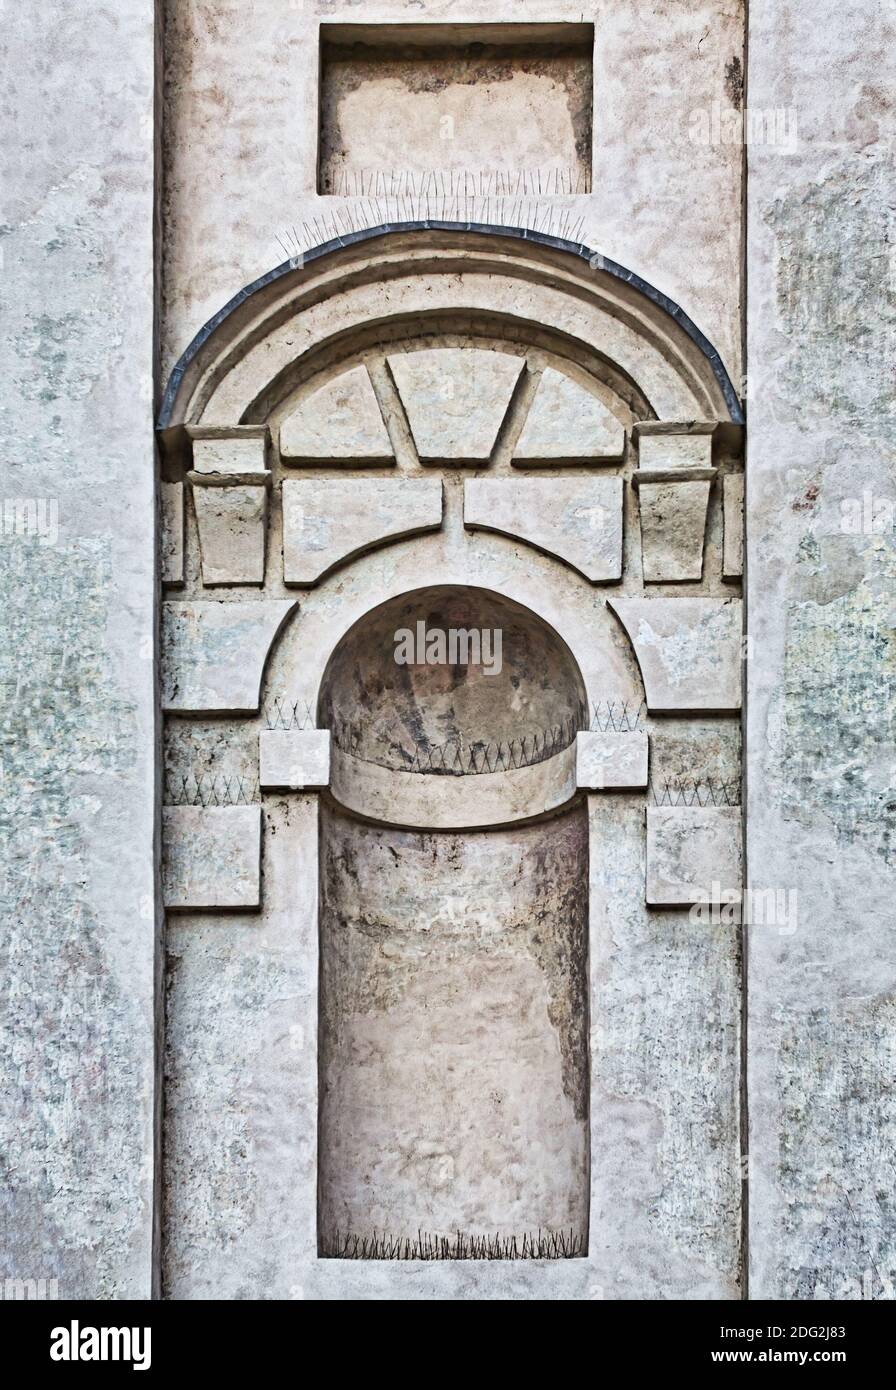 Typische architektonische Elemente der italienischen Architektur der Spätrenaissance, die immer noch auf den Klassizismus schaut. Stockfoto